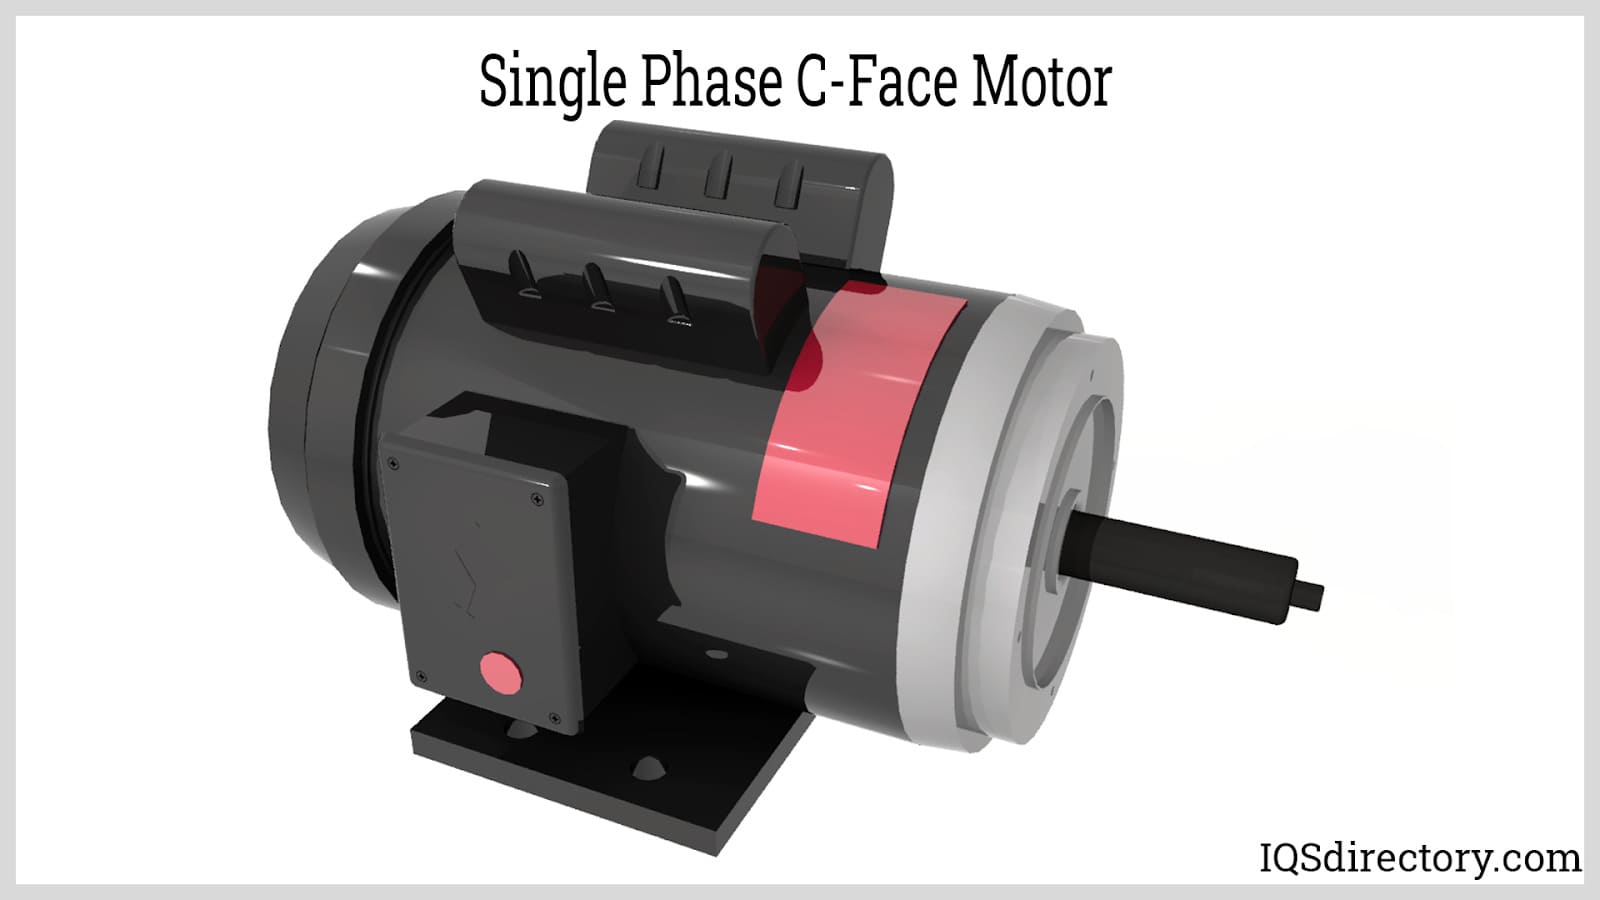 Single Phase C-Face Motor